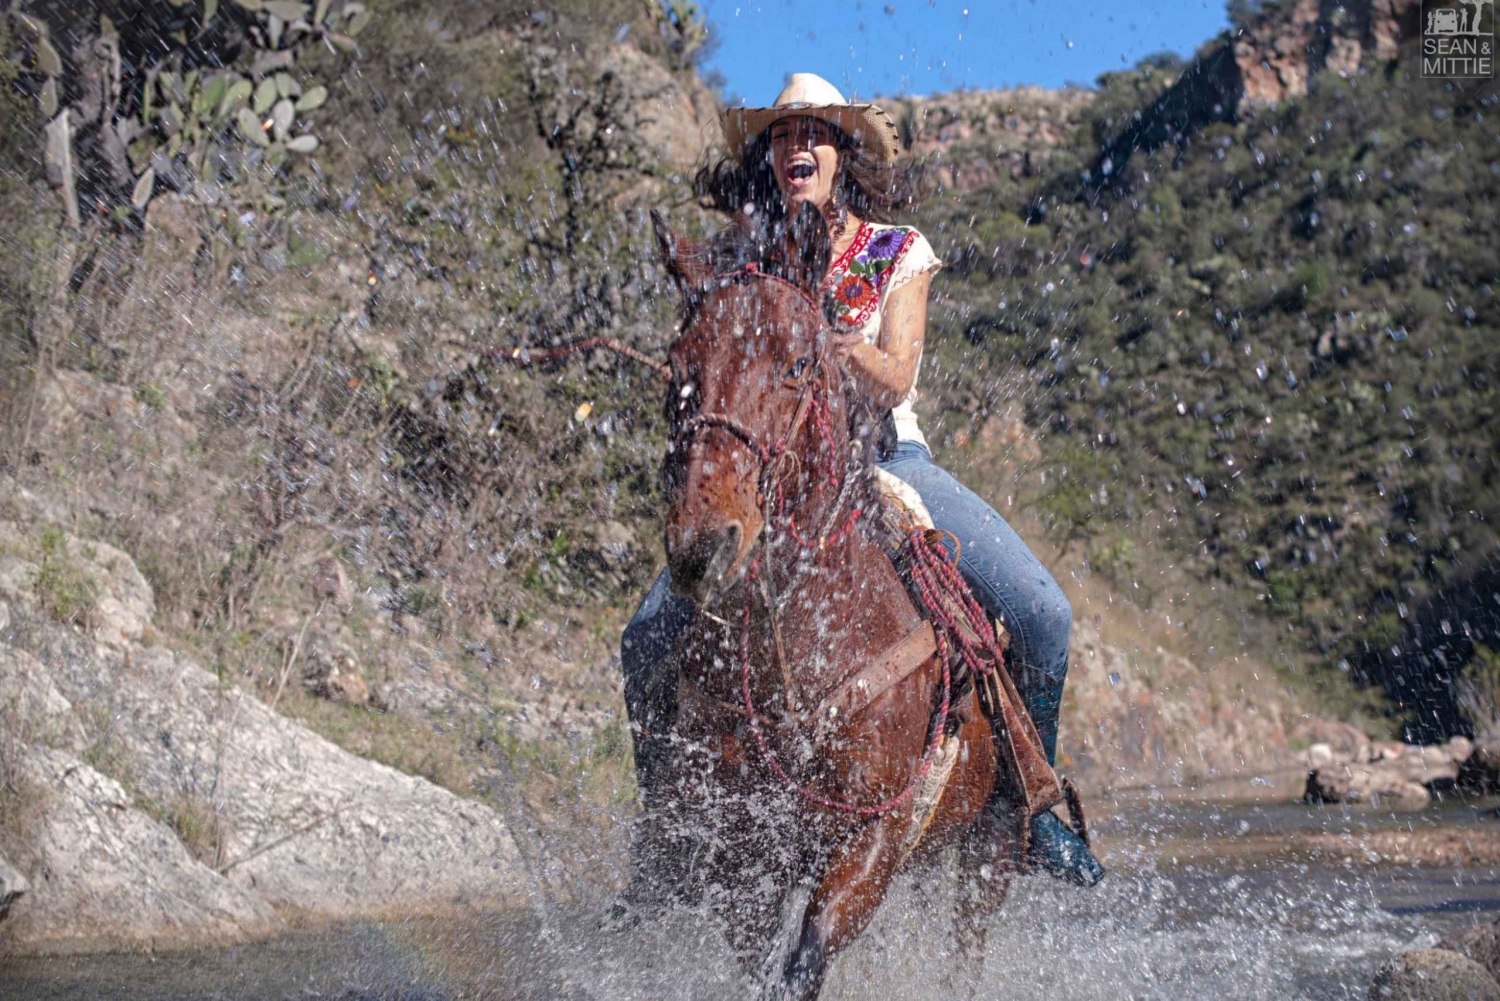 San Miguel Allende: Half-Day Horseback Riding Adventure